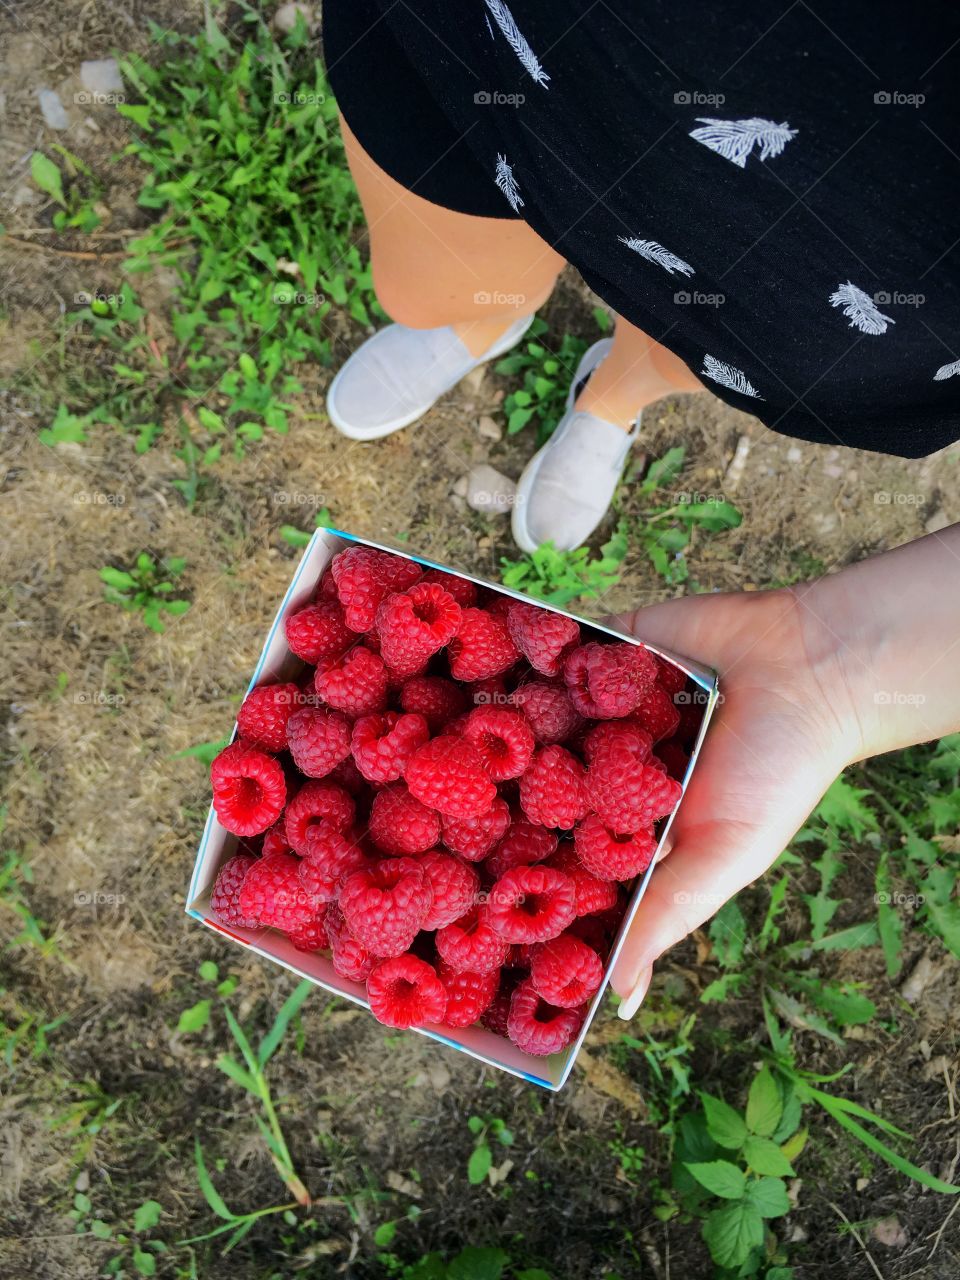 Berries from Sweden